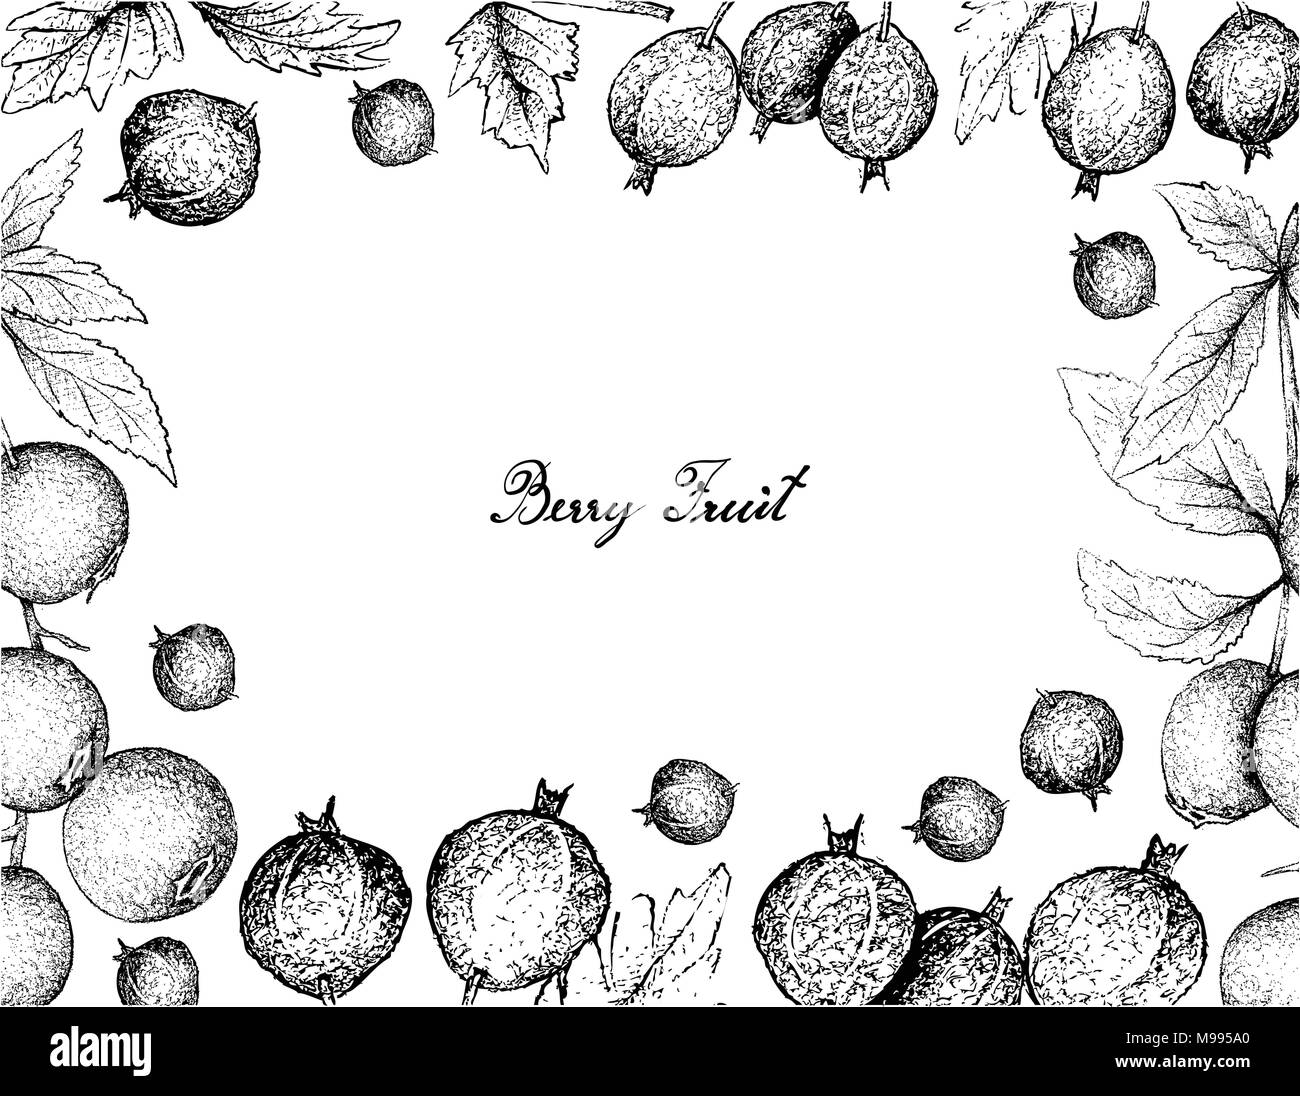 Beerenfrüchte, Illustration von Hand gezeichnete Skizze frischen schwarzen Samt Stachelbeere oder Ribes Oxyacanthoides Obst isoliert auf weißem Hintergrund. Stock Vektor